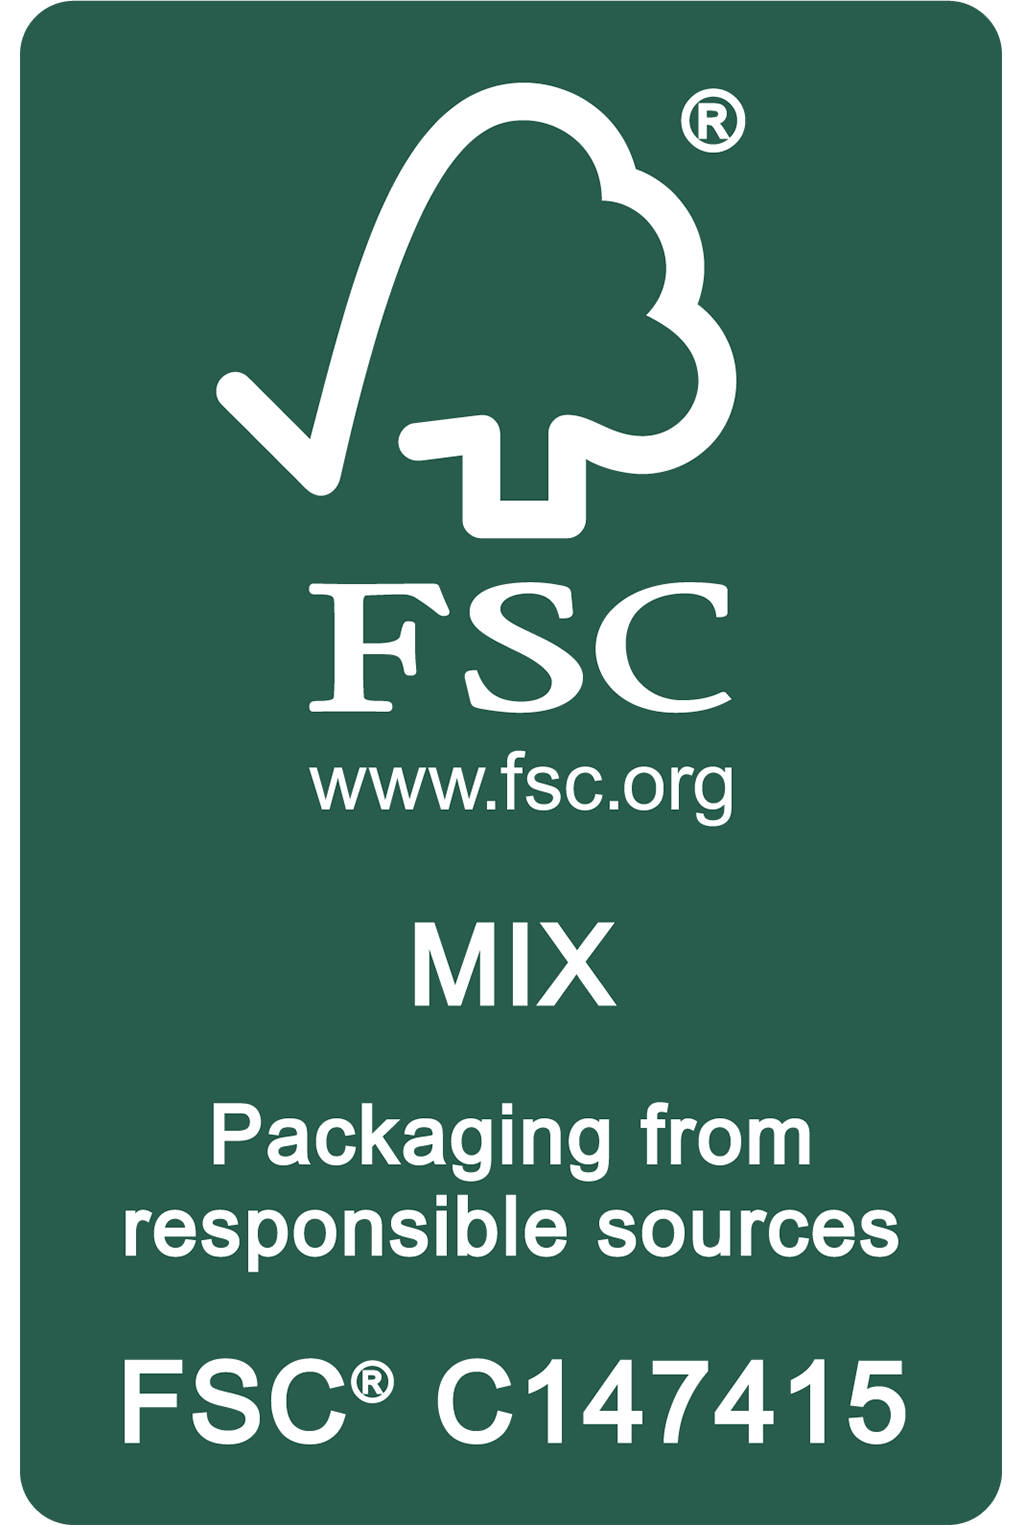 環境友善包裝 FSC 認證